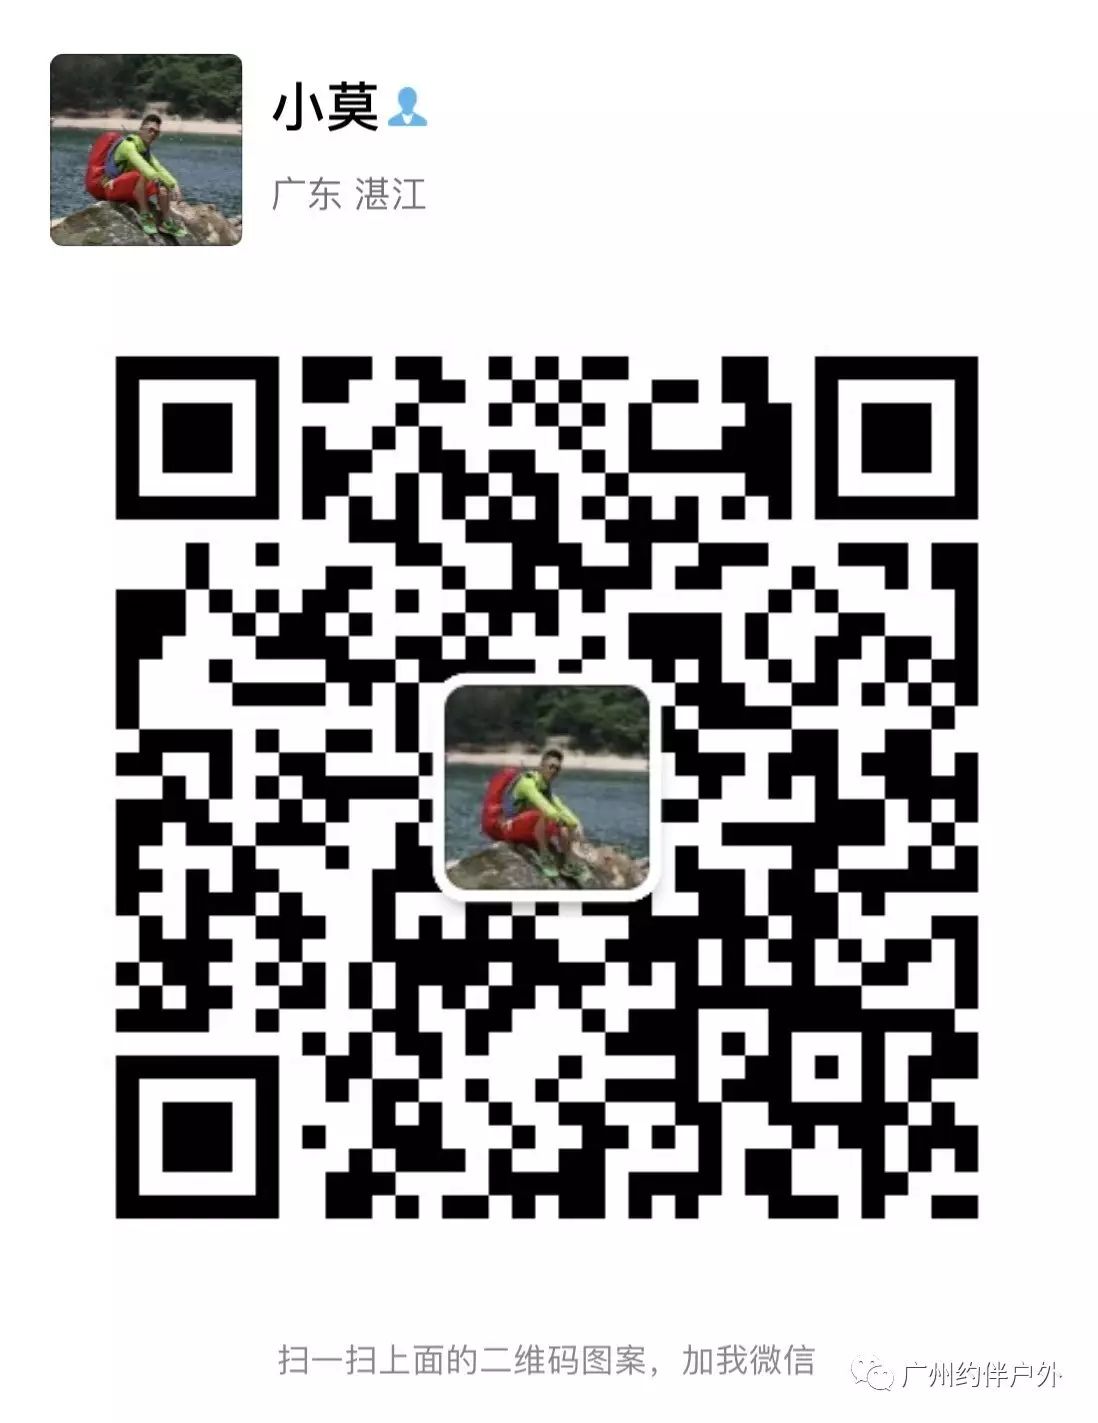 (9)7月2日 英西峰林 休闲摄影-户外活动图-驼铃网